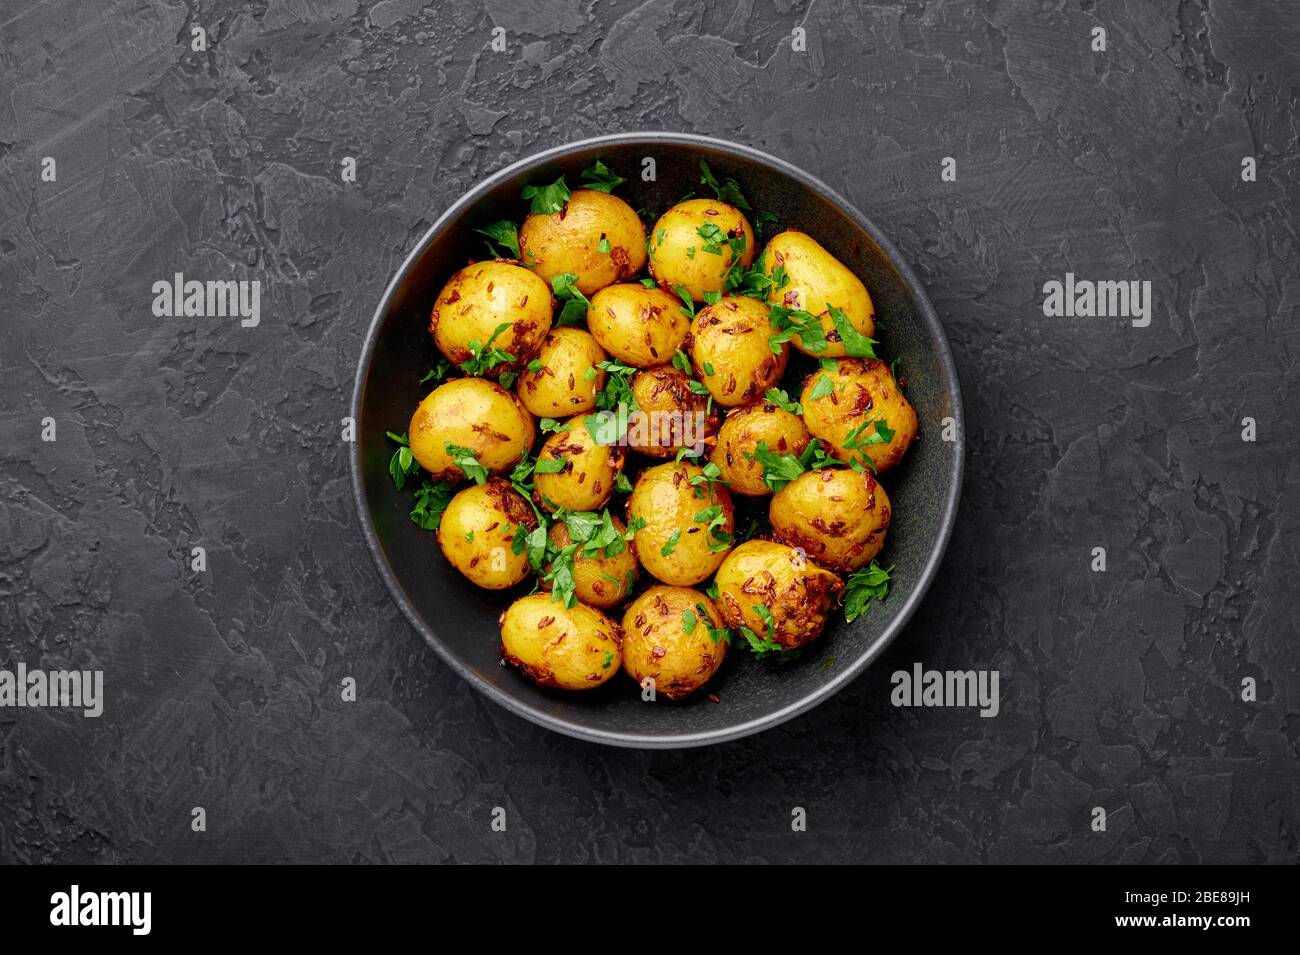 Jeera Aloo in schwarzer Schale auf dunklem Schiefergrund. Jeera Aloo ist ein Gericht der indischen Küche mit Babykartoffeln, Jeera-Samen und Koriander. Kopierbereich Stockfoto